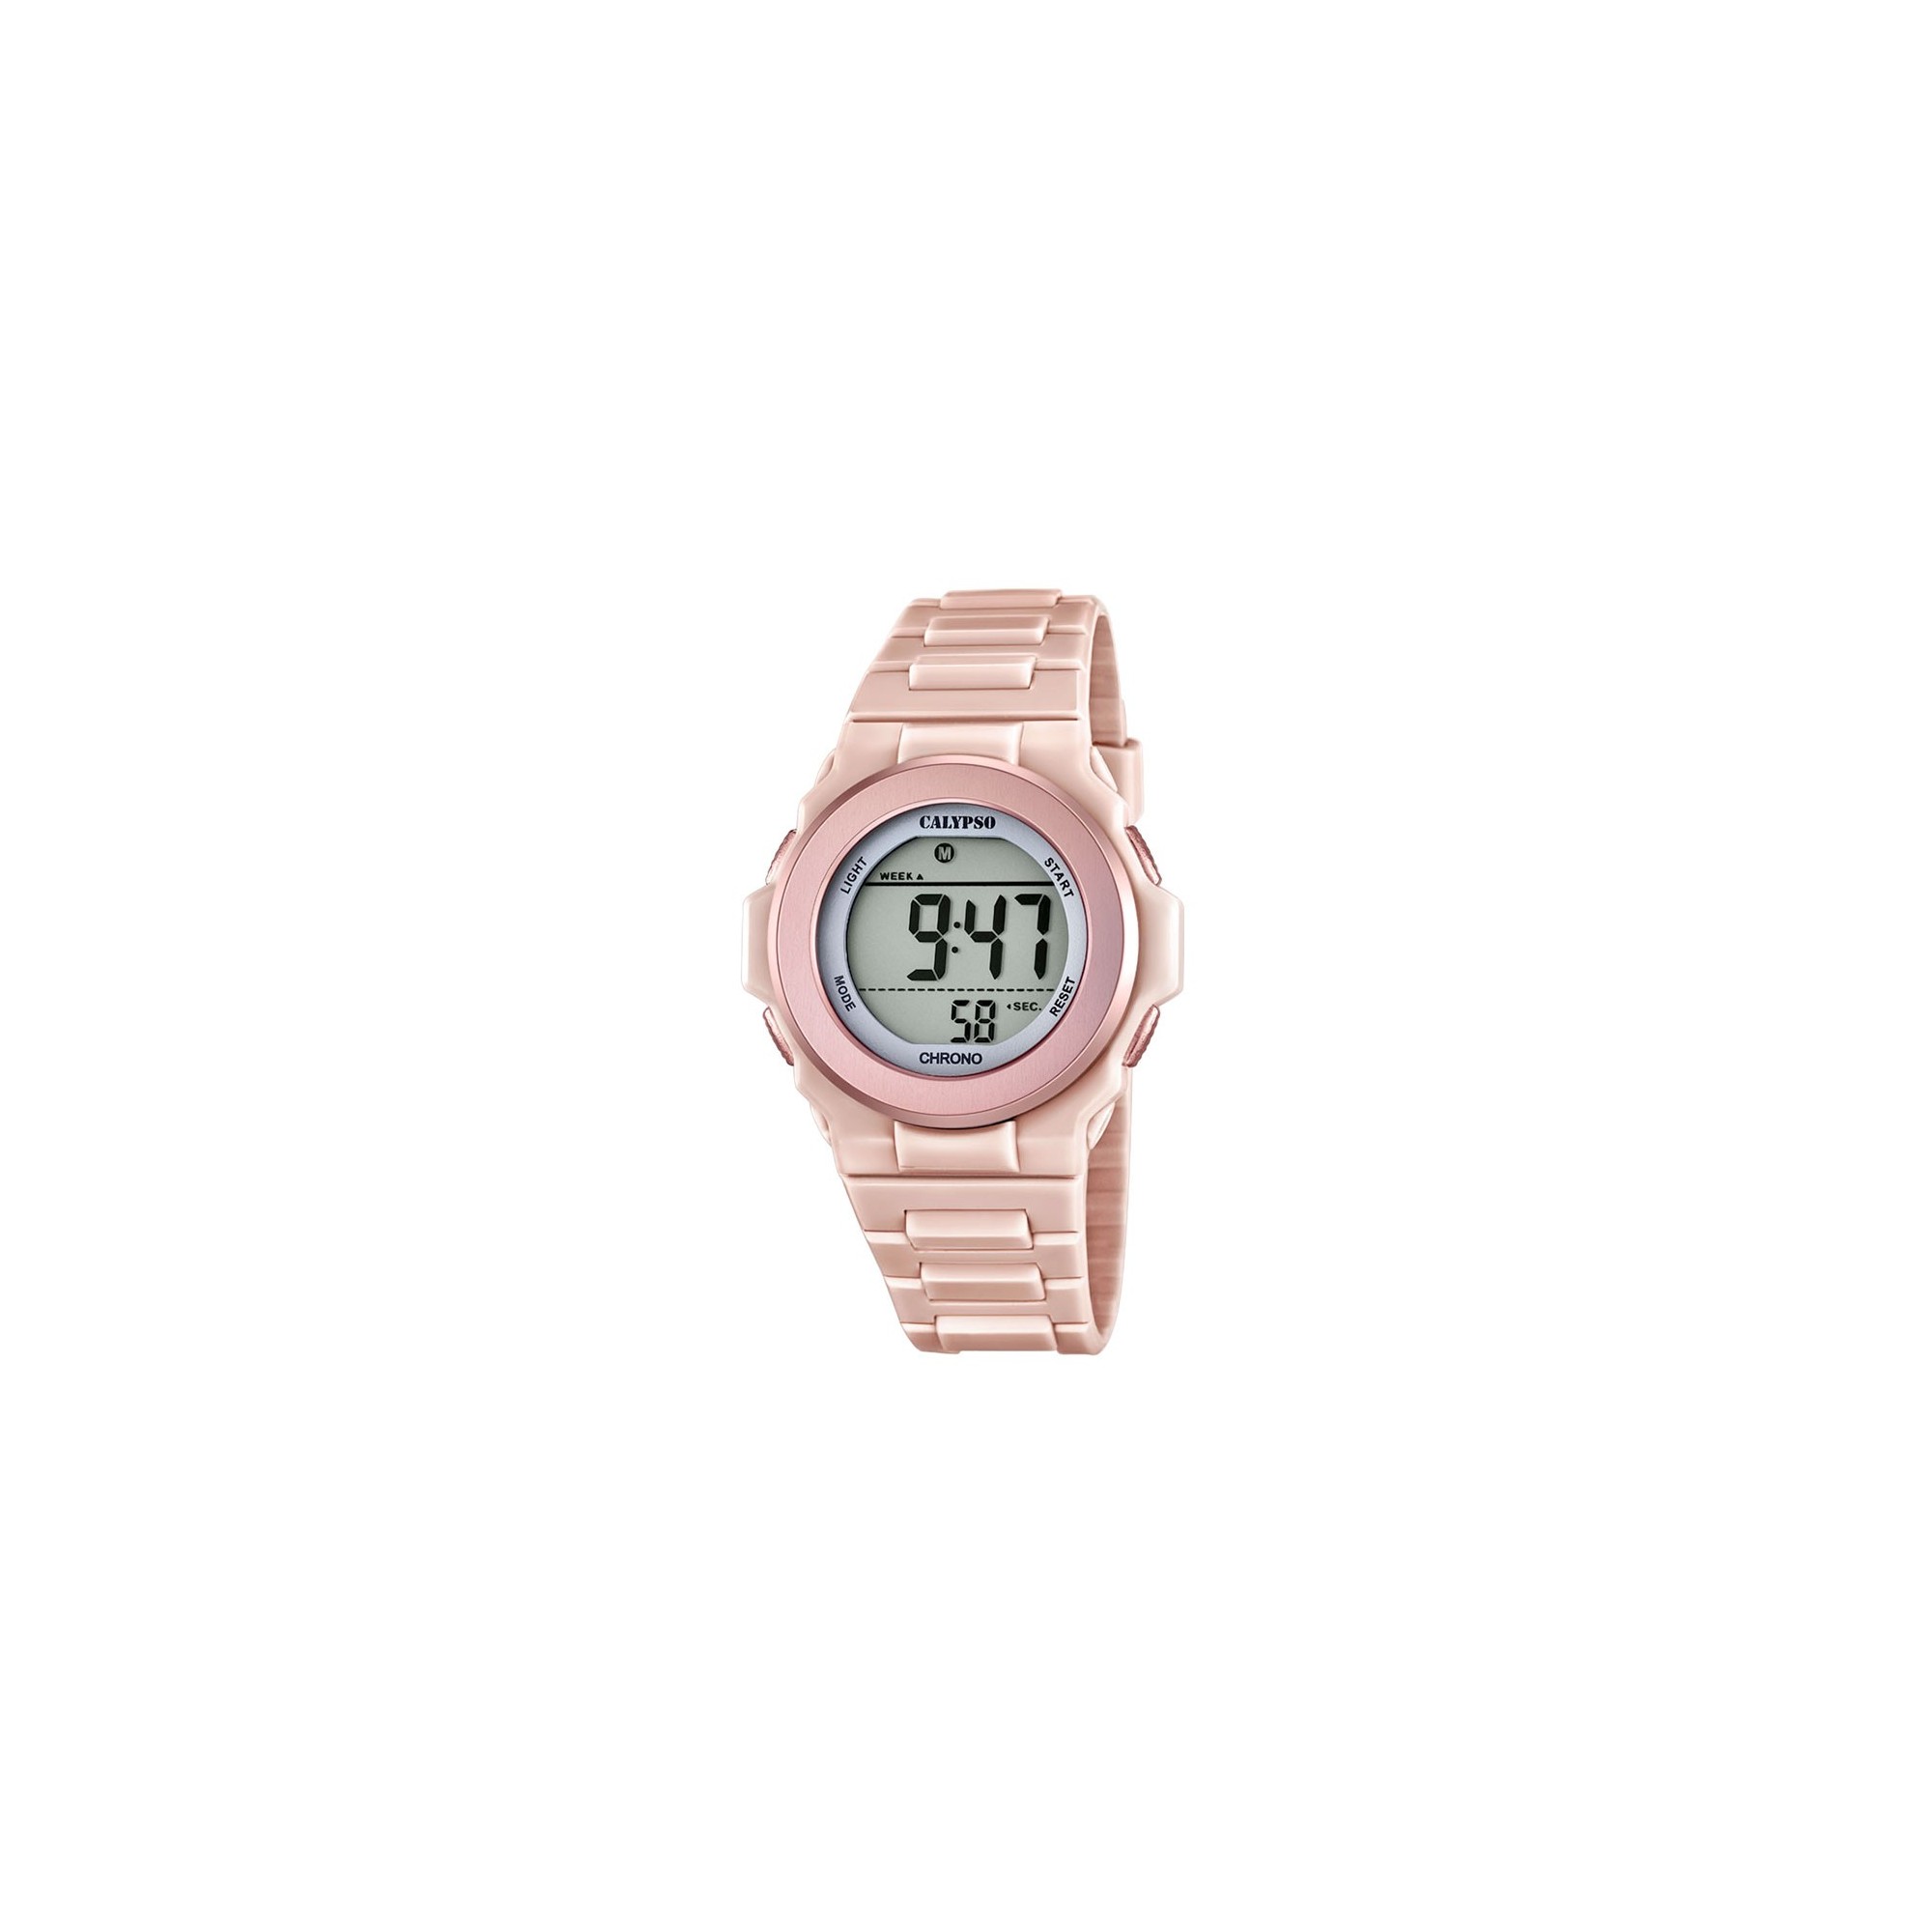 Comprar barato Reloj Calypso mujer niña digital silicona rosa. K5571/2 -  Envios gratuitos - PRECIOS BARATOS. Comprar en Tienda Online de Venta por  Internet. Joyería Online